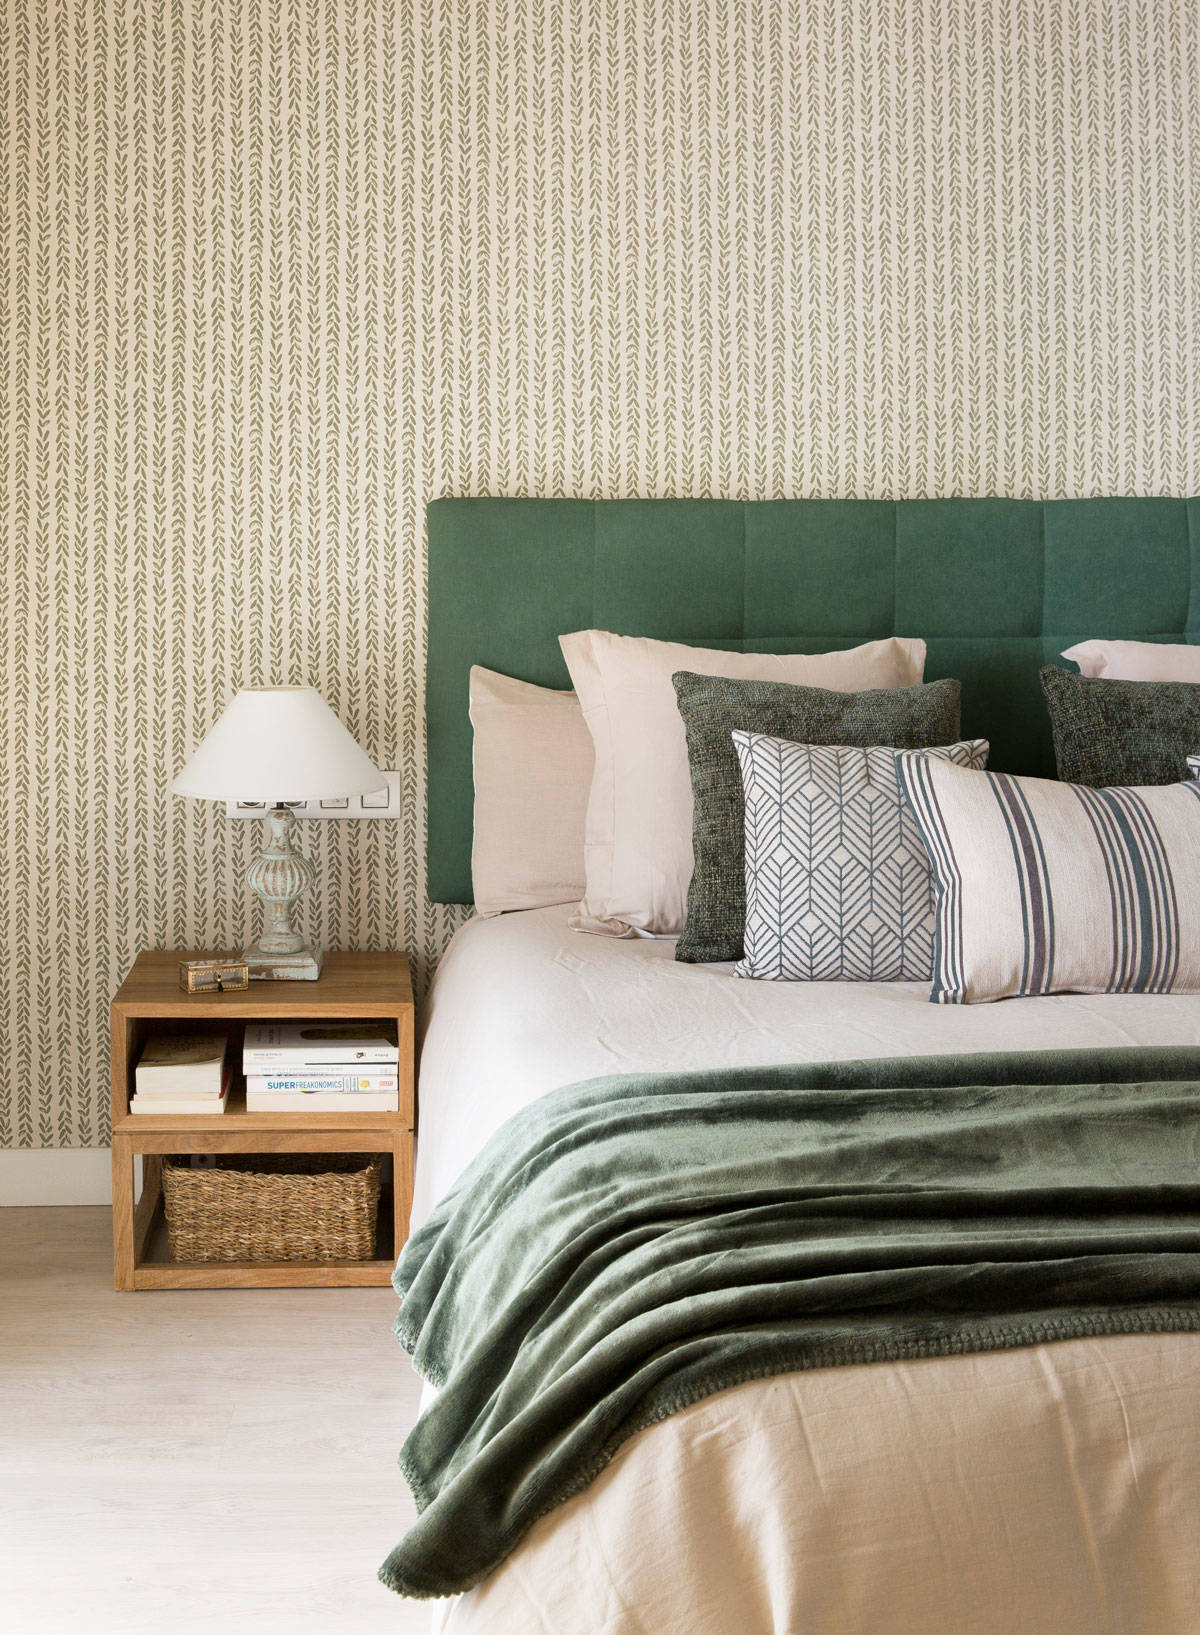 Dormitorio con papel pintado en tonos verdes decorado por Pia Capdevila